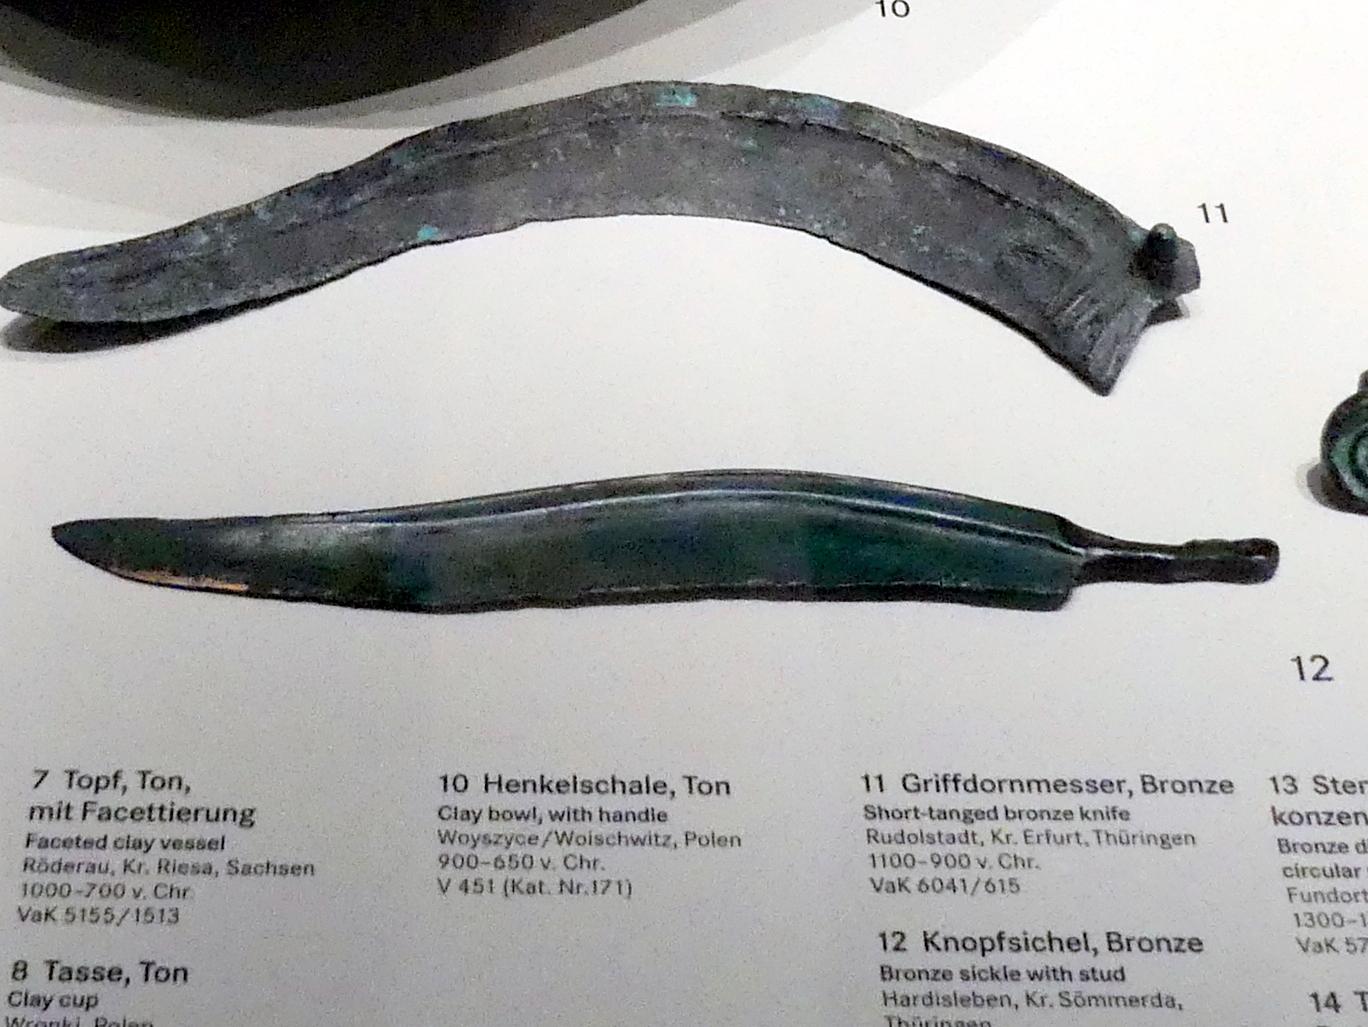 Knopfsichel, 1300 - 1100 v. Chr.